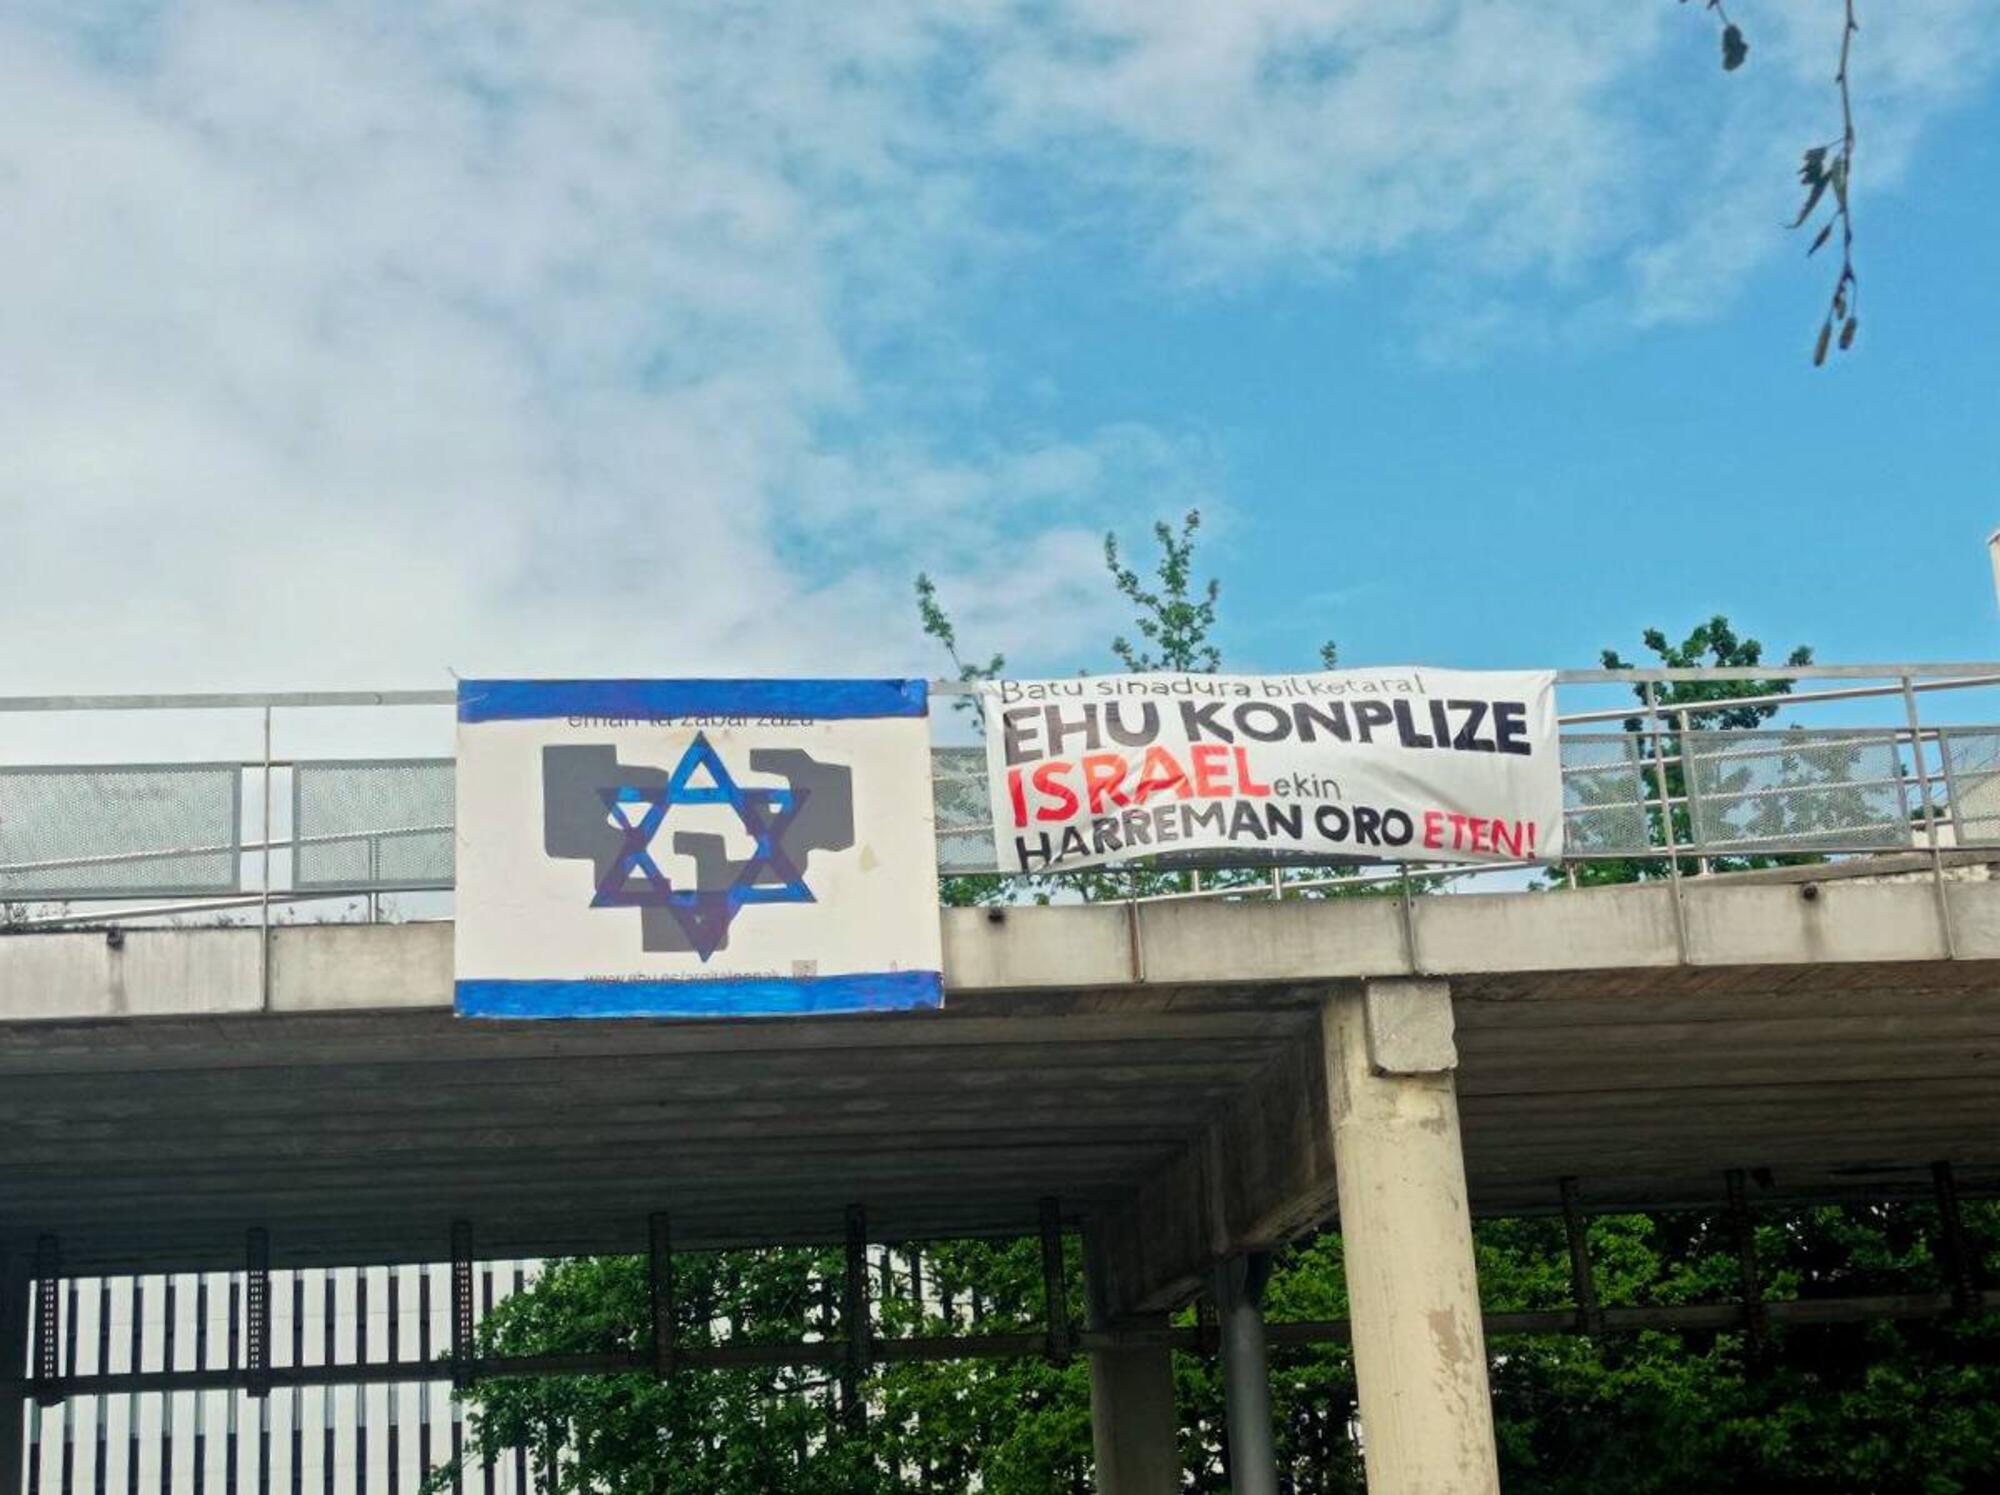 Universidad País Vasco pancartas contra la colaboración con Israel